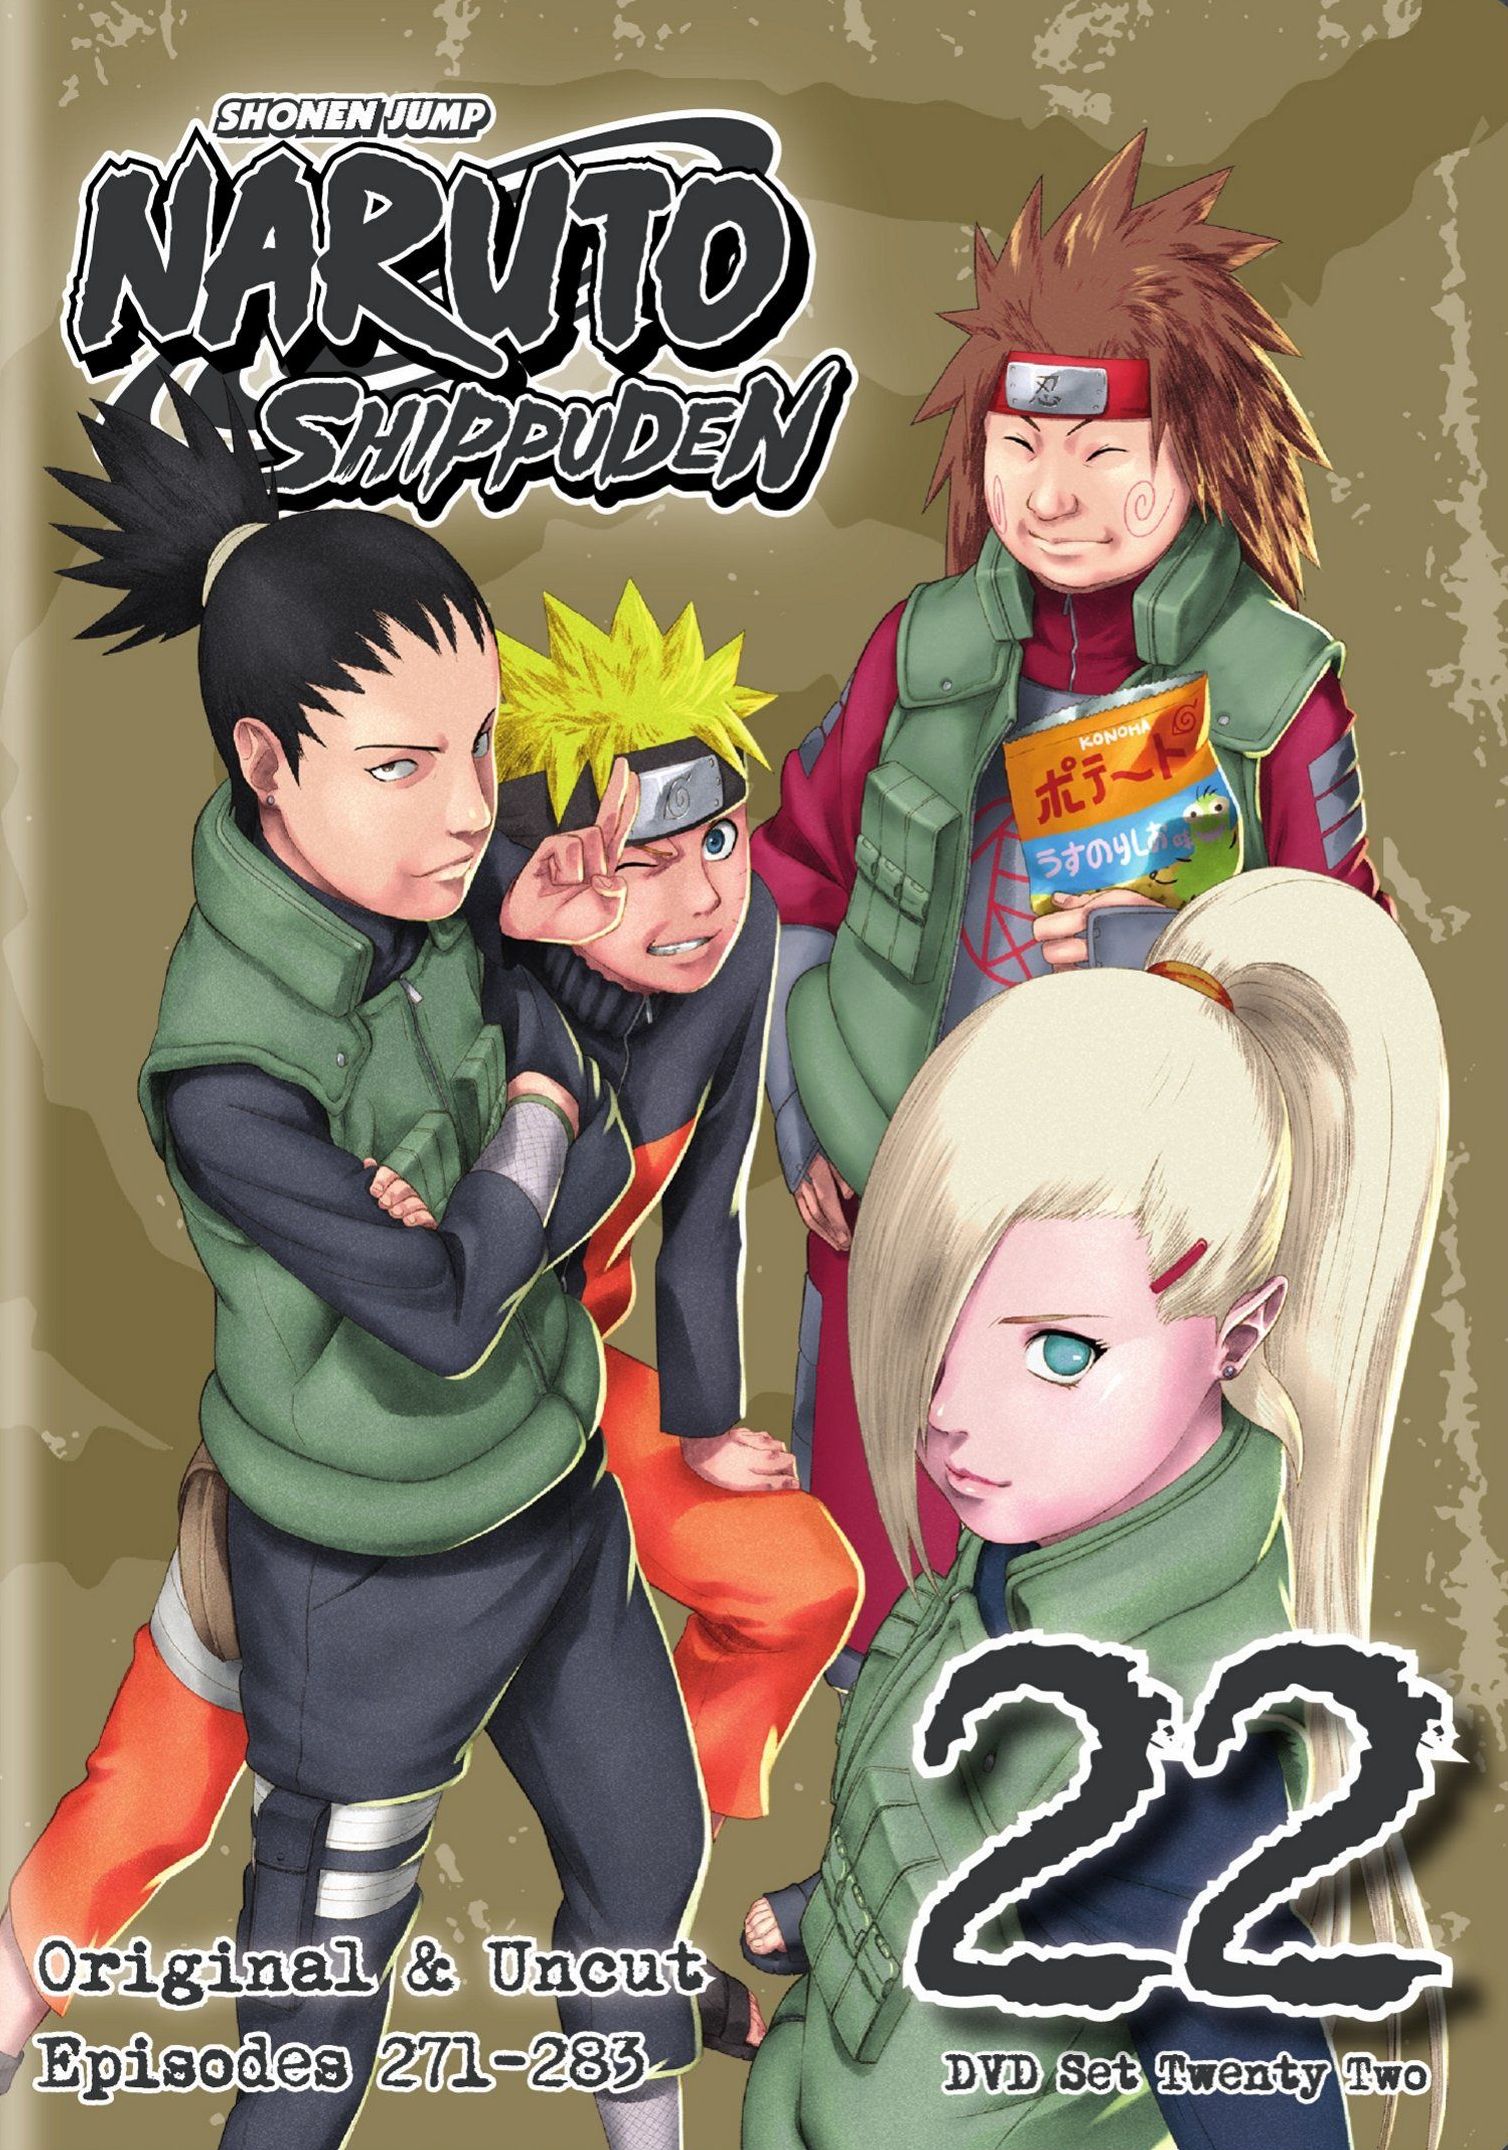  Naruto Shippuden Uncut Set 36 (DVD) : Various, Various